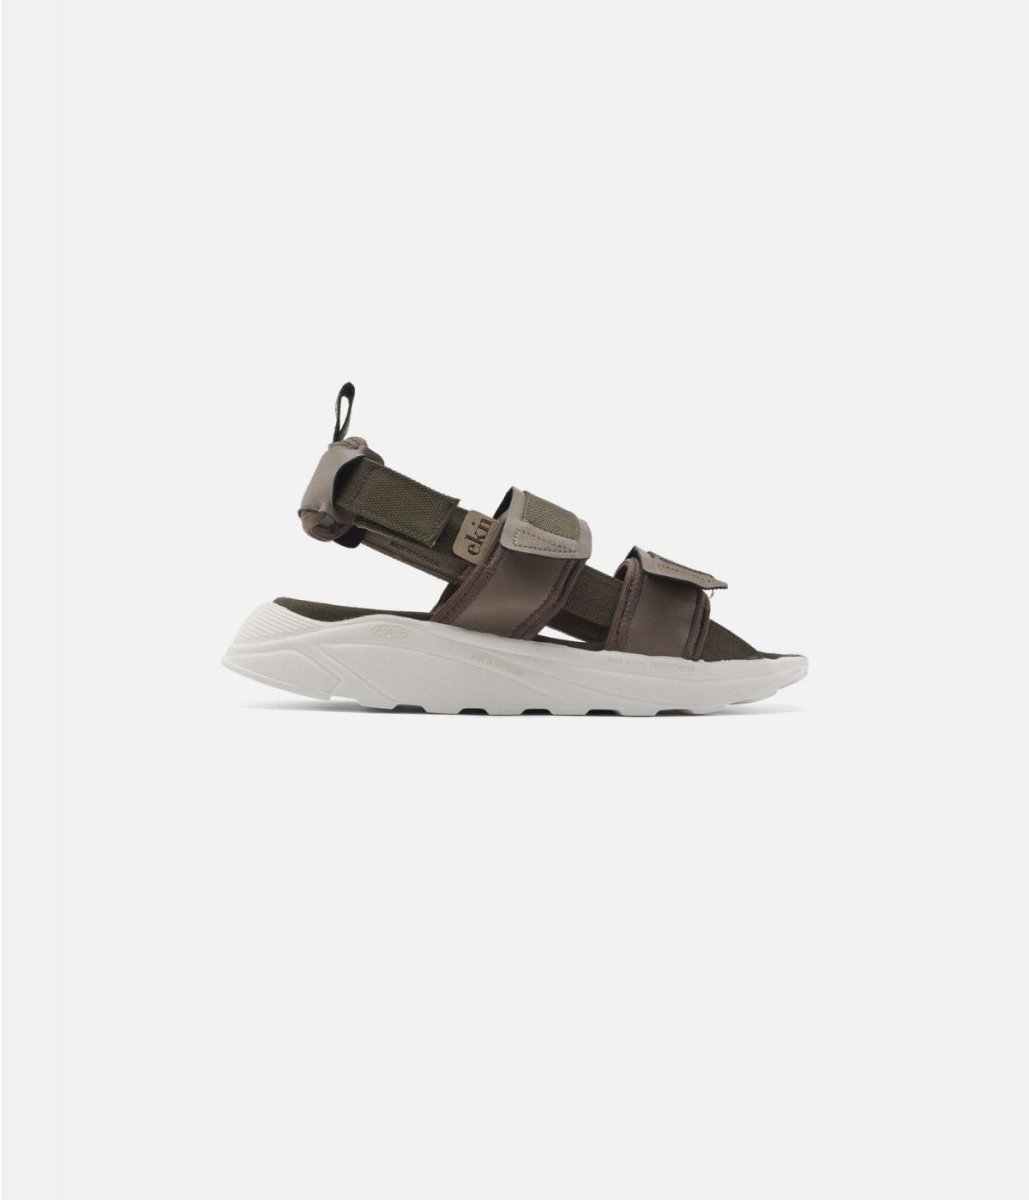 Peach Lizzard Sandalen - ekn footwear - MALA - The Concept Store